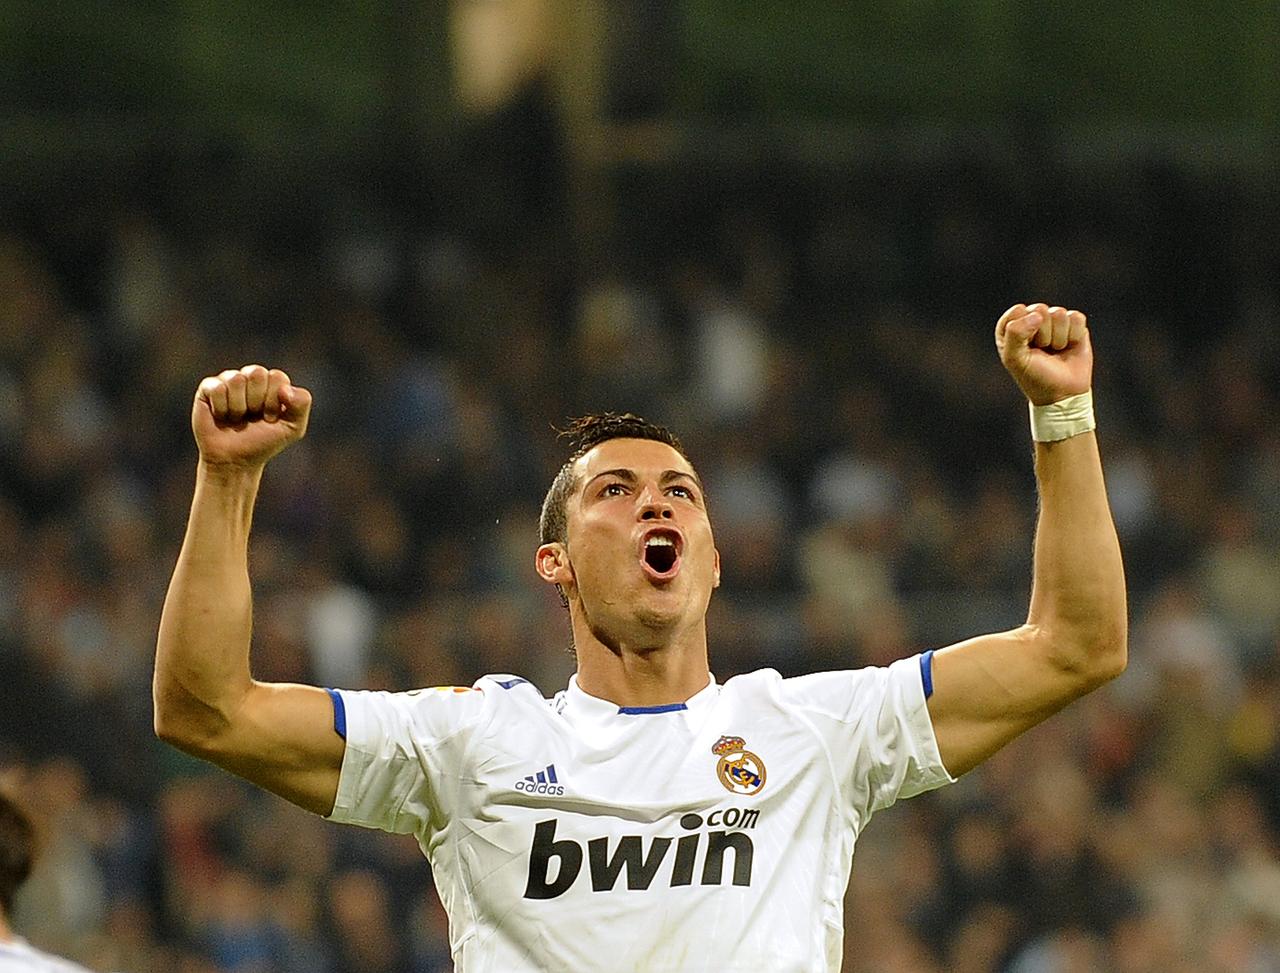 http://sportige.com/wp-content/uploads/2011/05/Cristiano-Ronaldo1.jpg